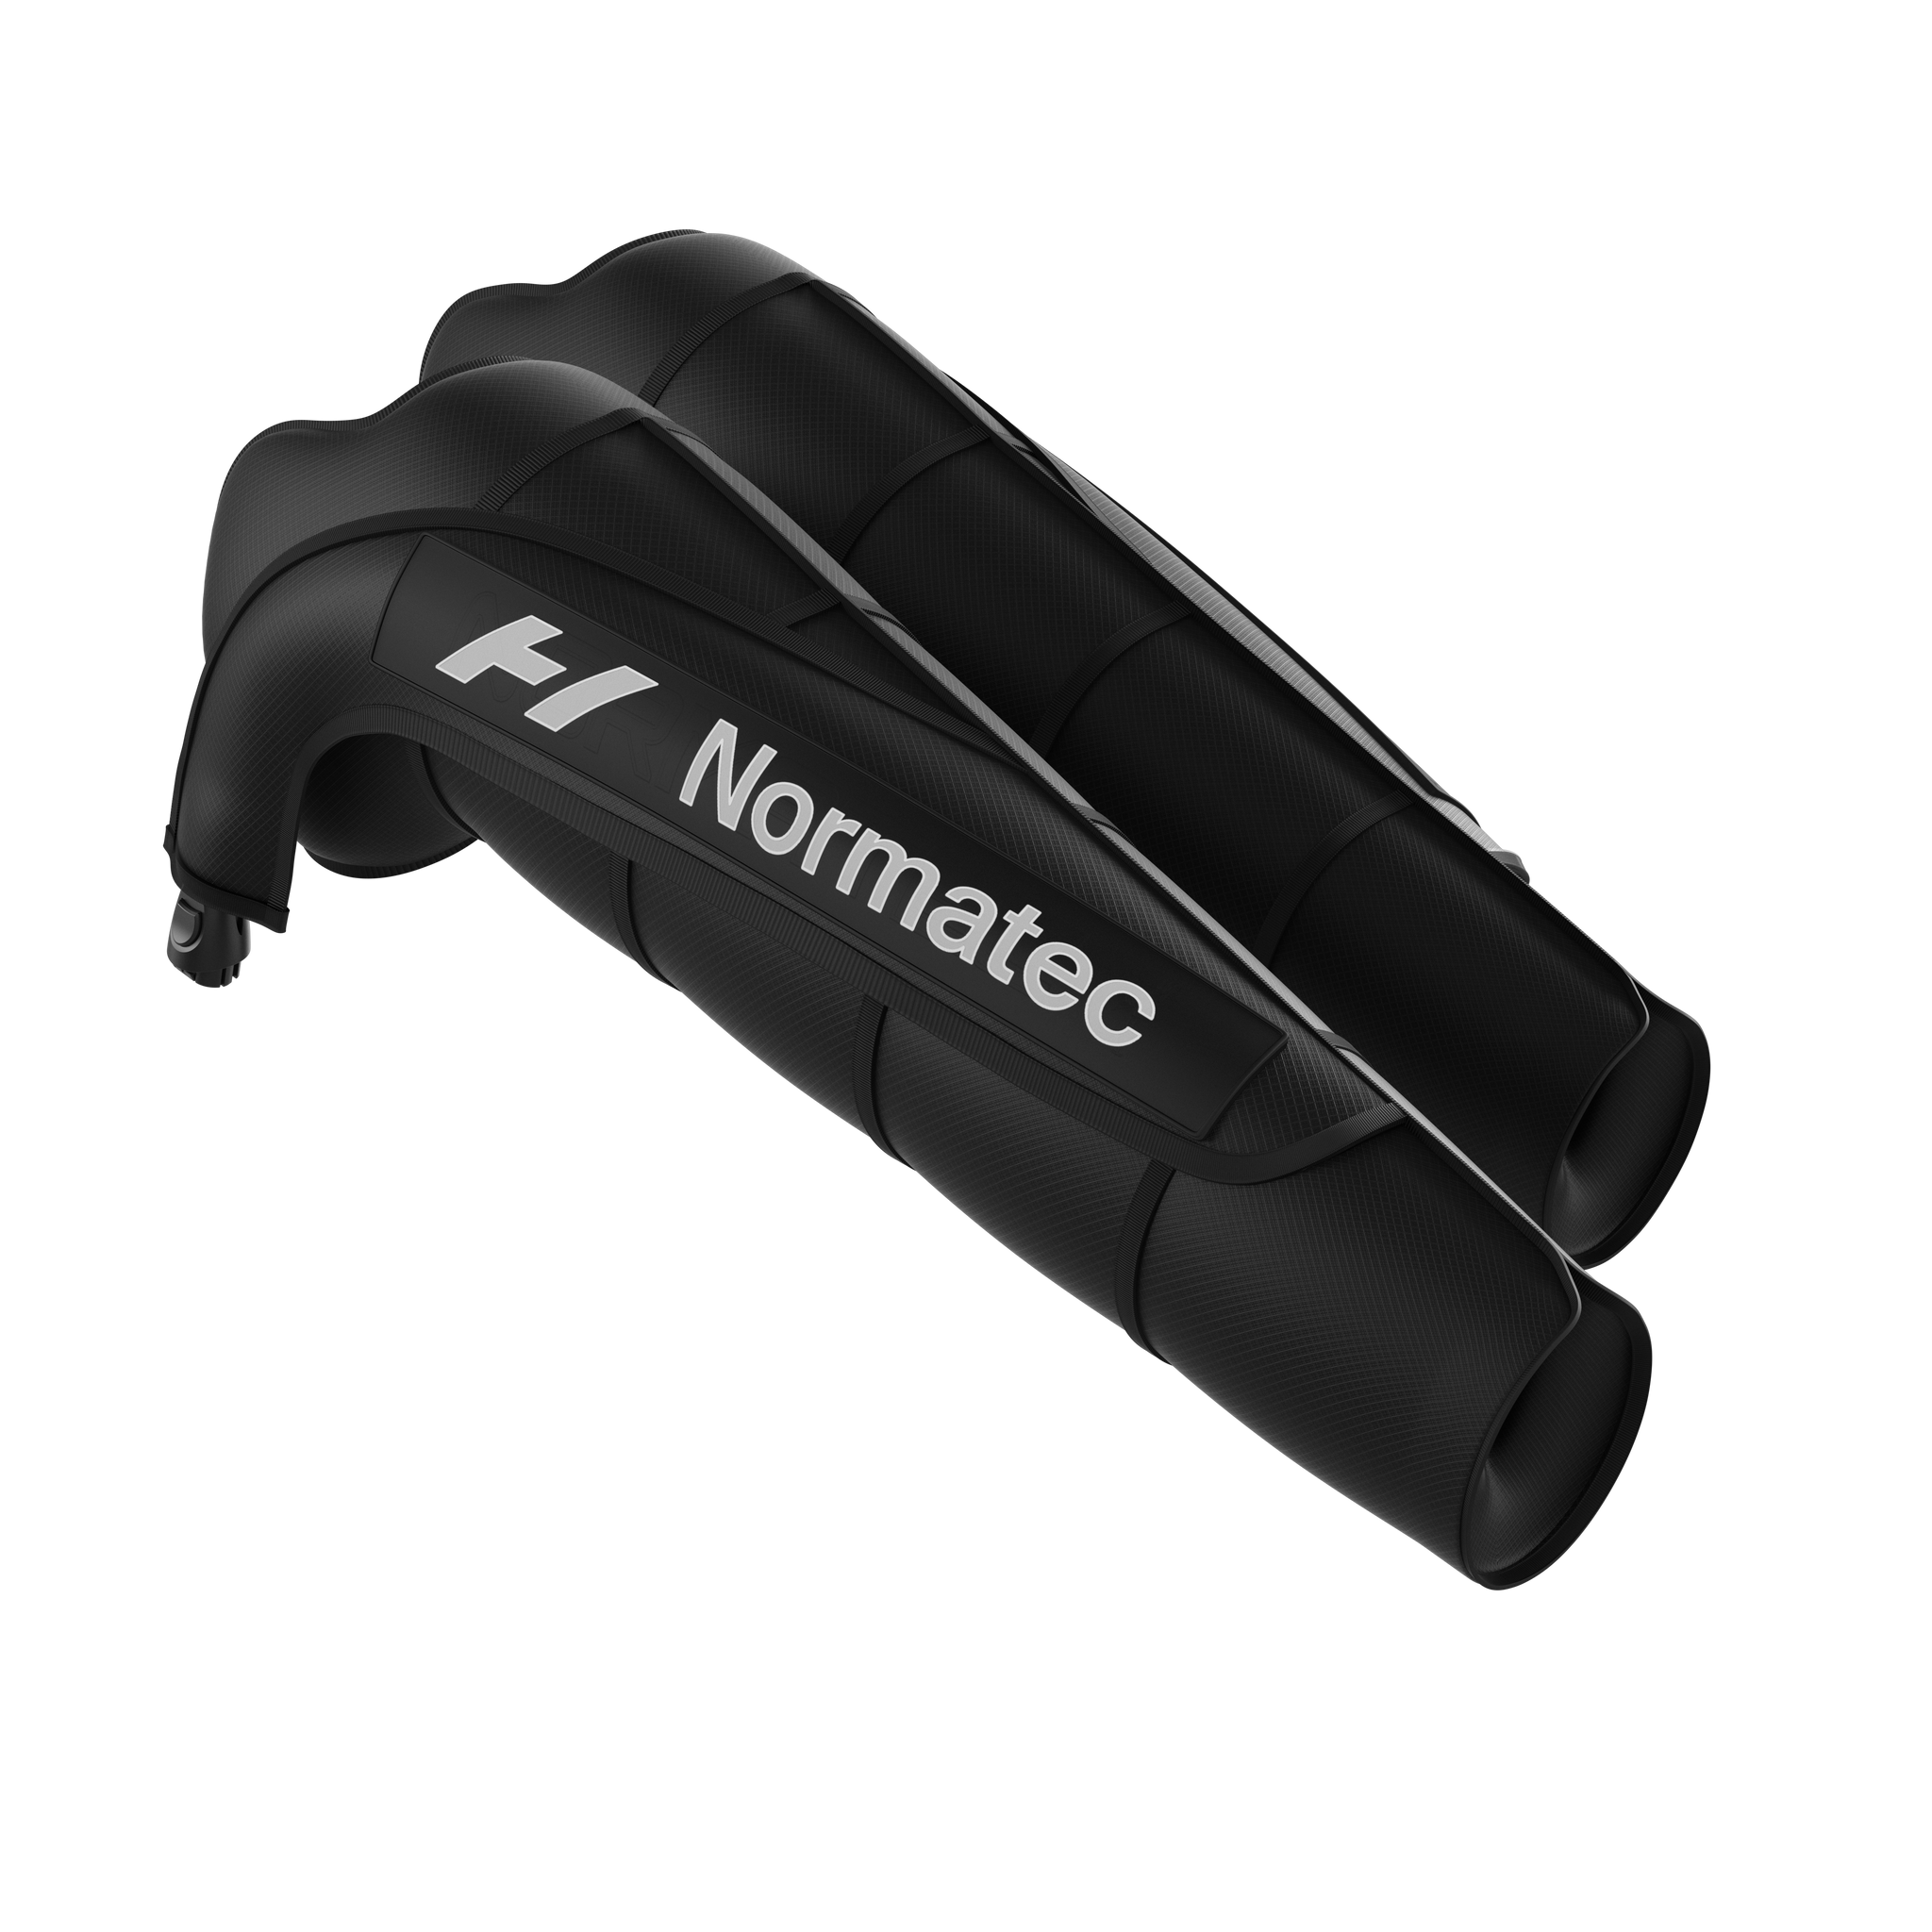 Normatec 3 Arm Attachments